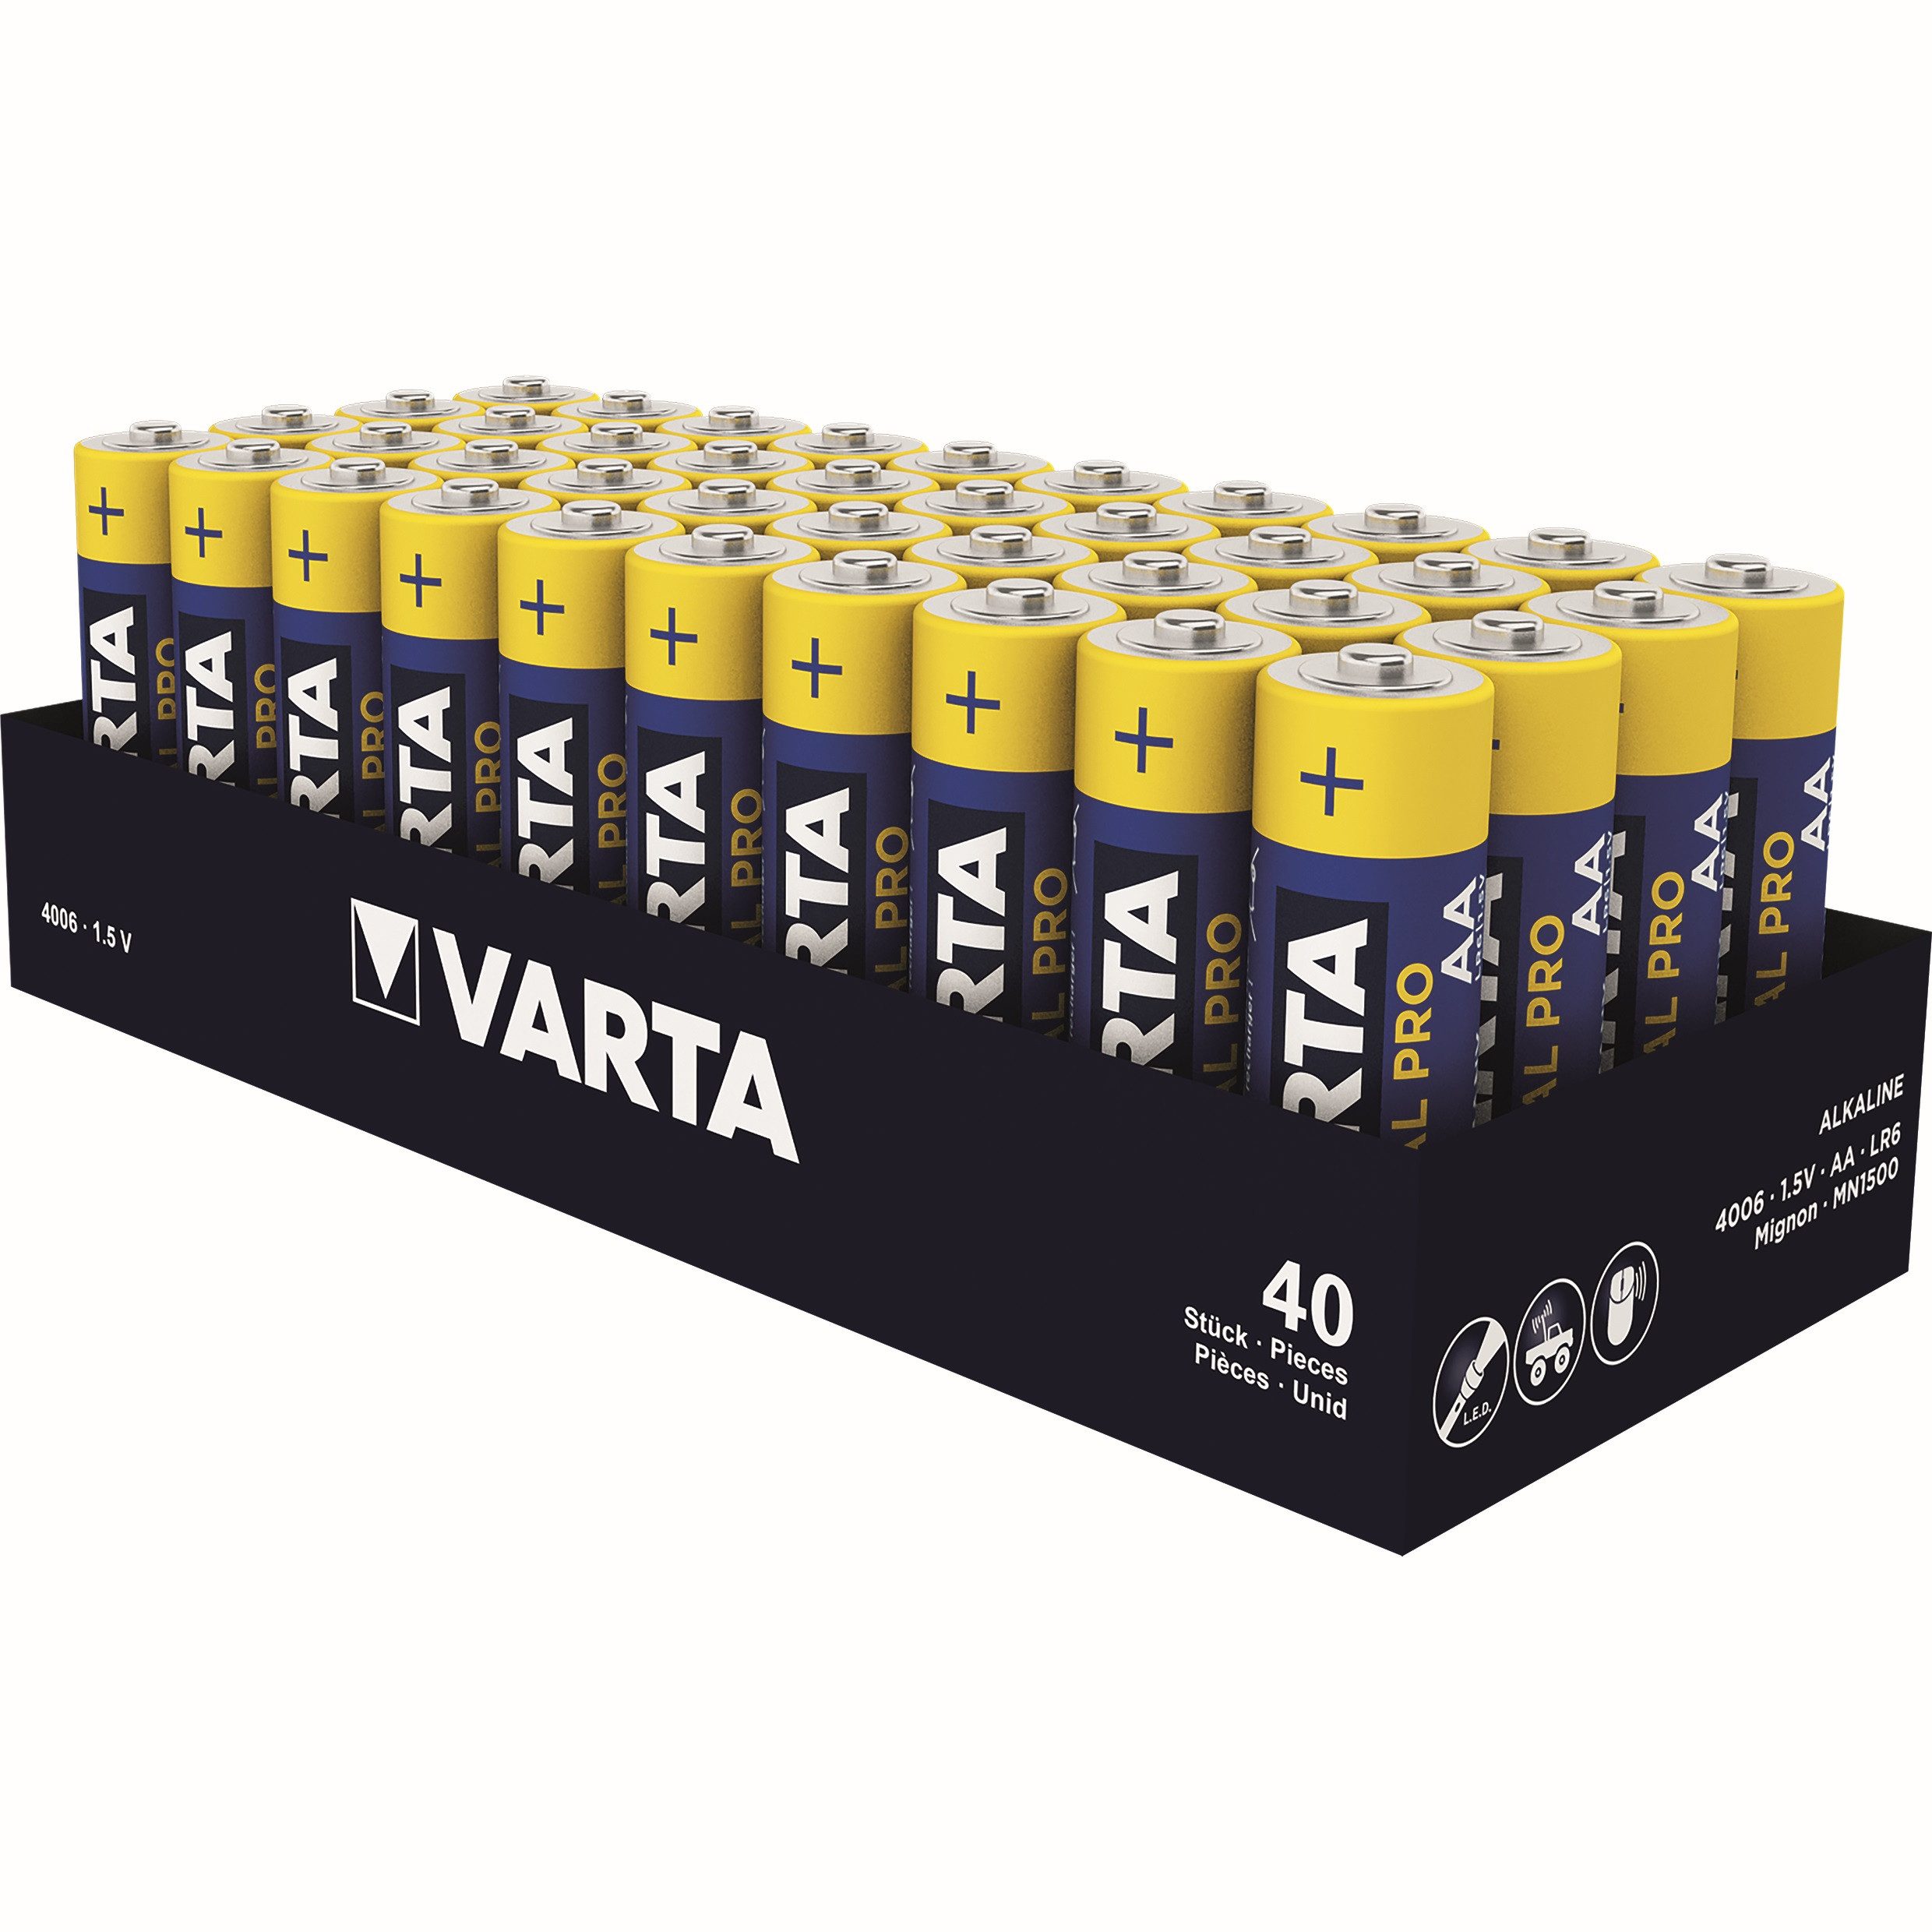 VARTA Batterien Alkaline INDUSTRIAL PRO, Mignon LR06 (AA), Packung: 40 Stück Batterie, LR06 (1,5 V)